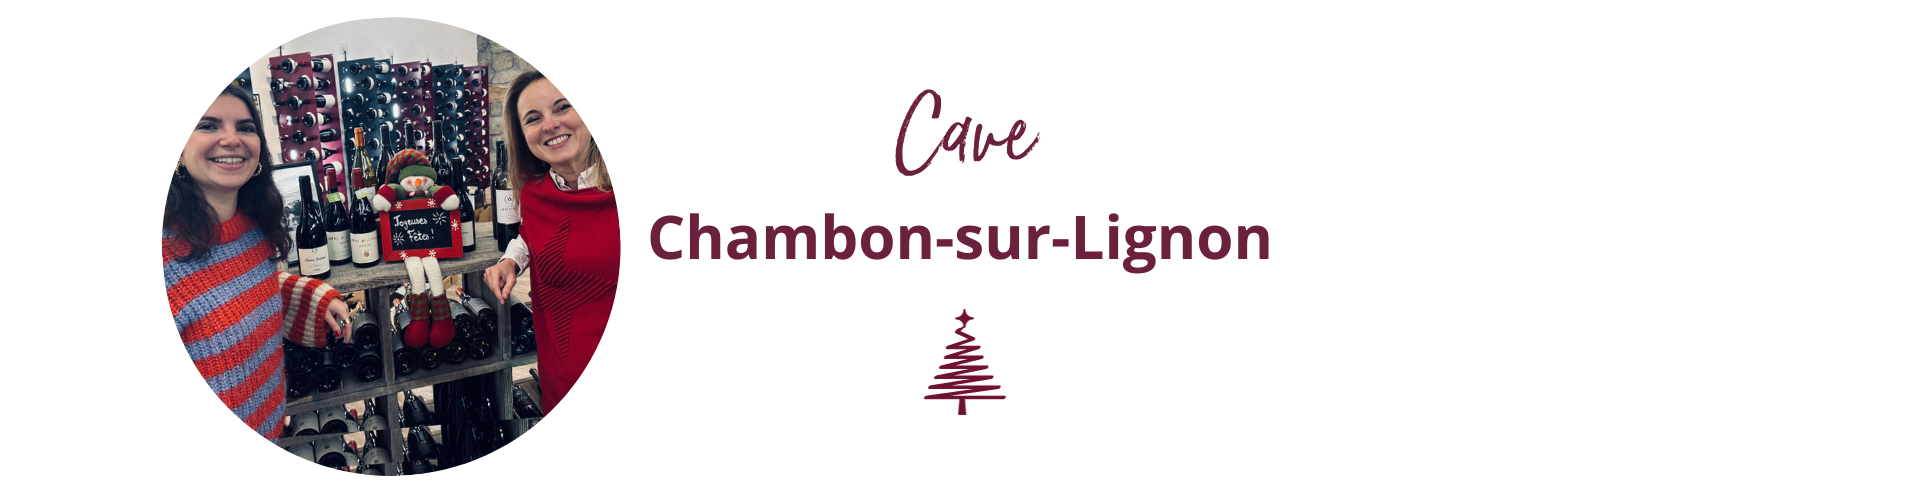 Cave Marcon Chambon-sur-Lignon 